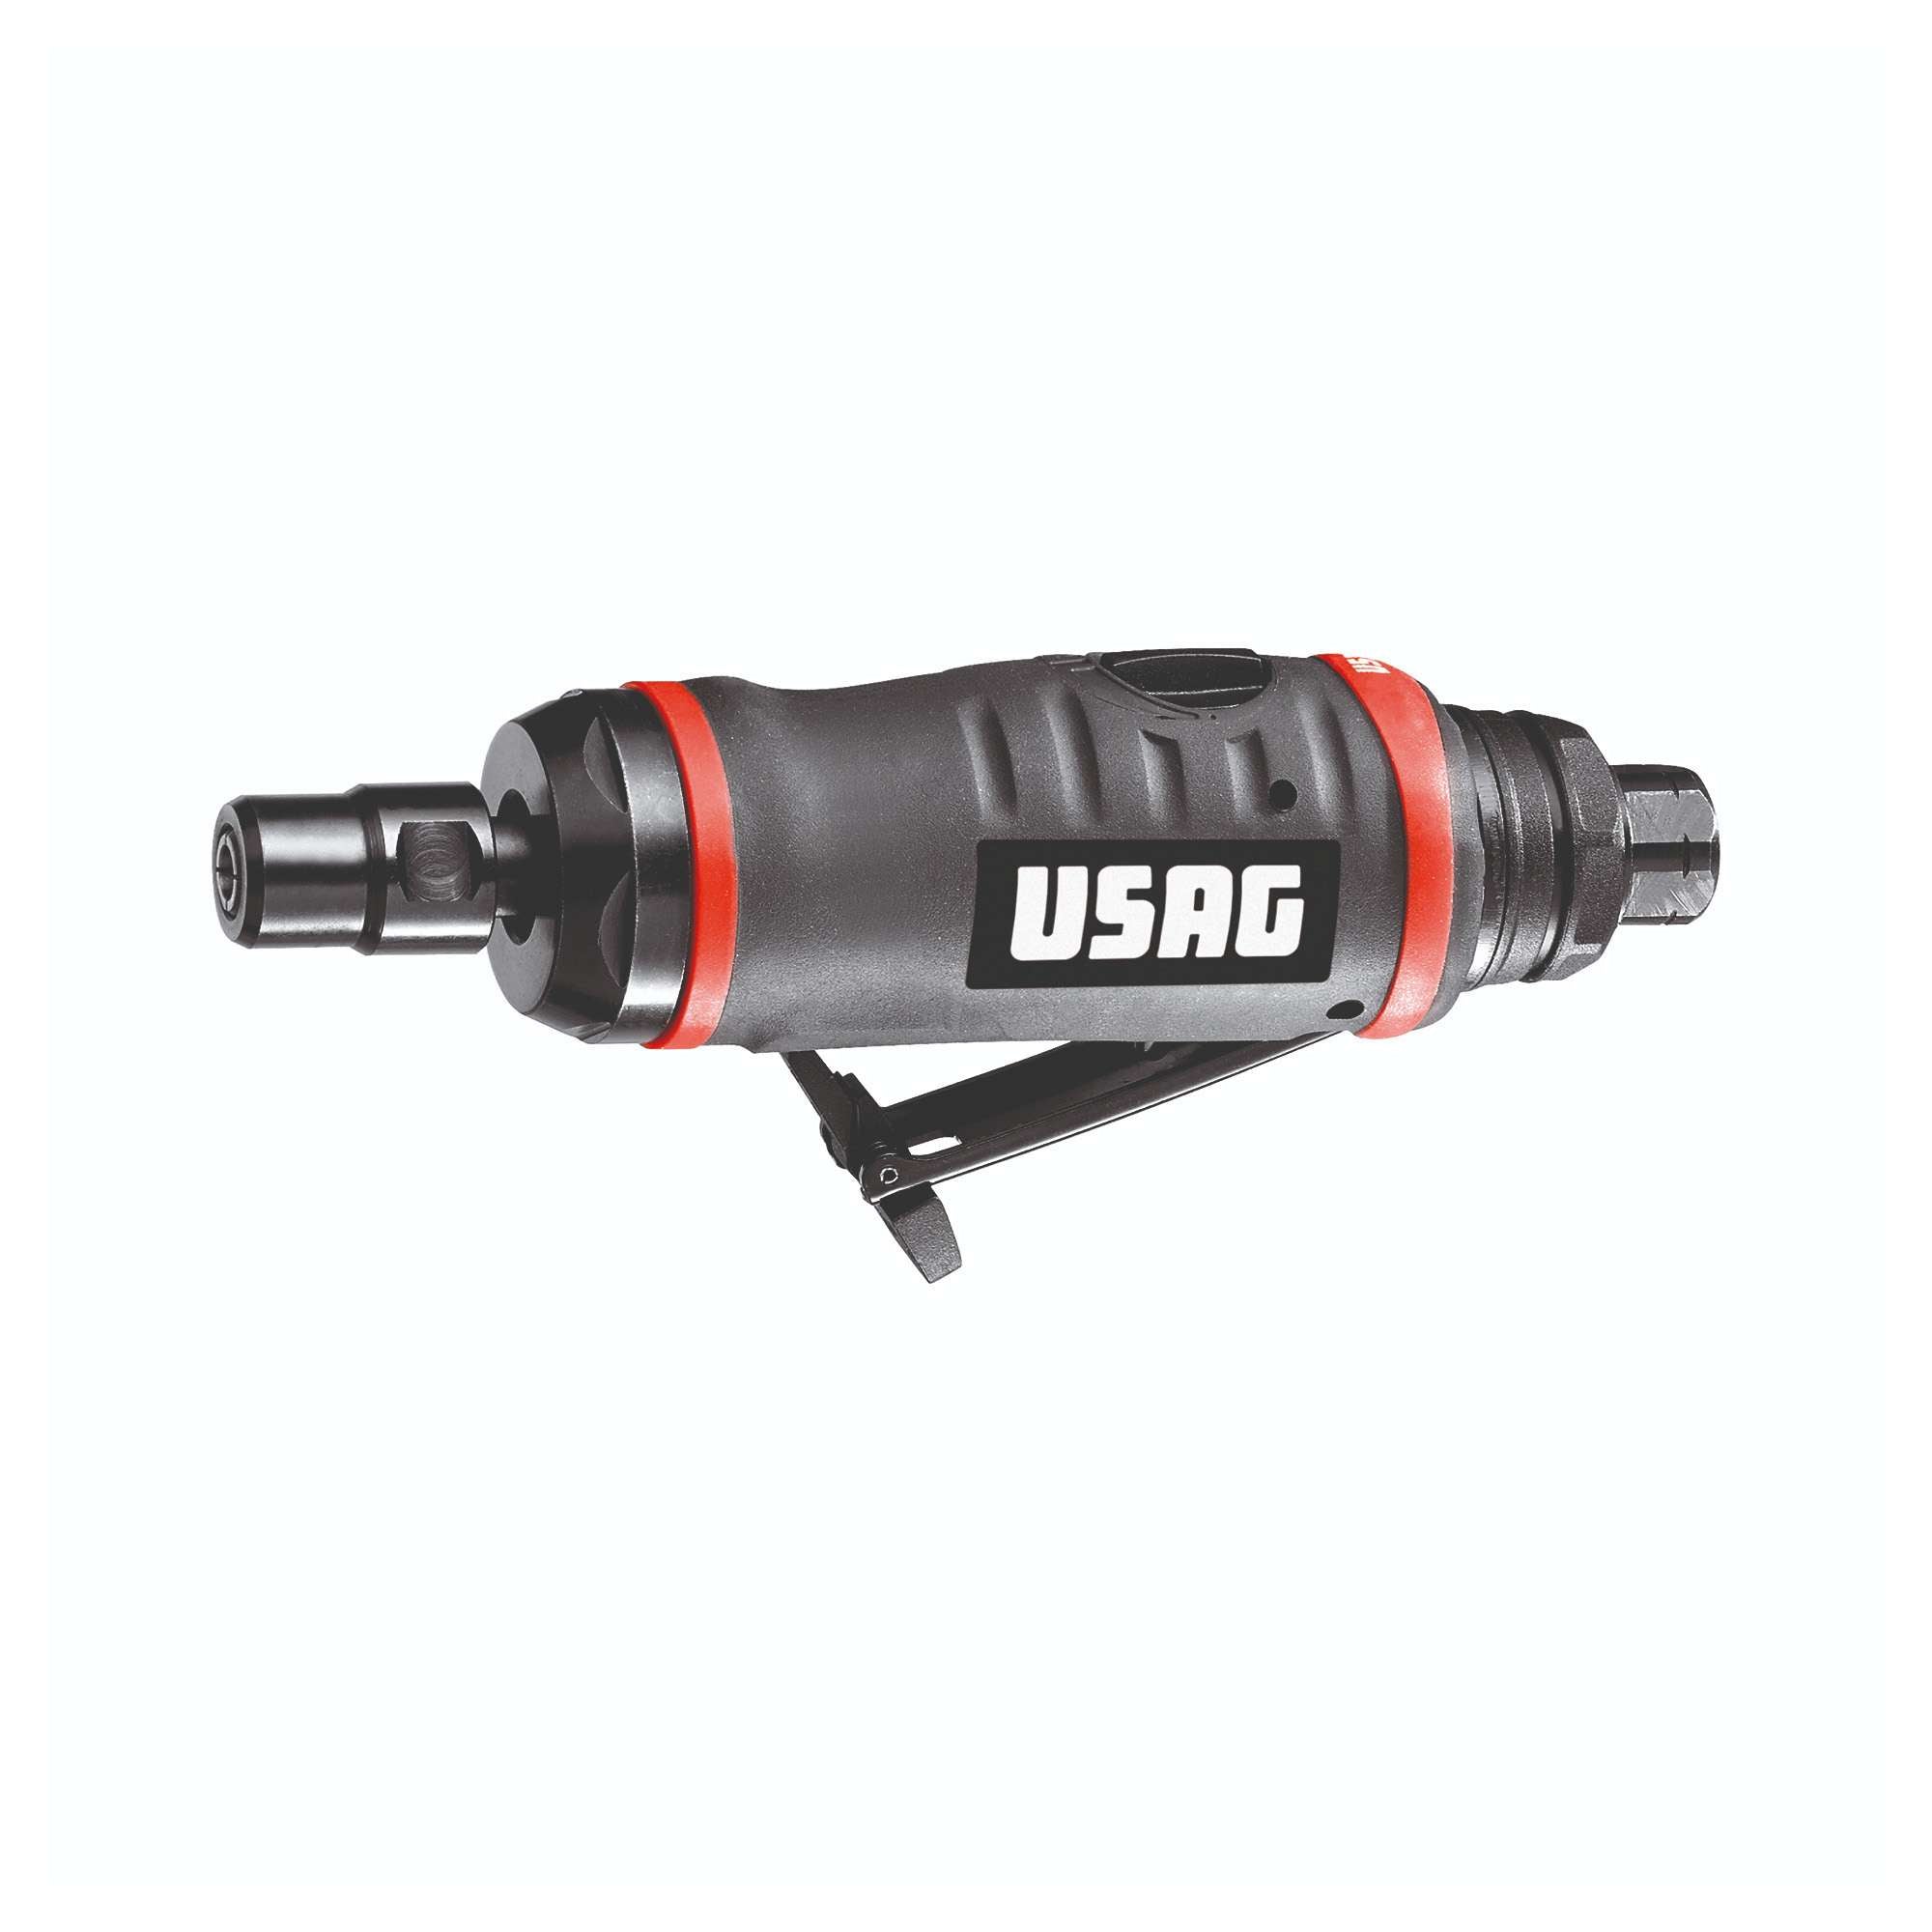 Straight grinder - 0.3 CV (220 W) 160x39x70mm 440gr - Usag 922 B1